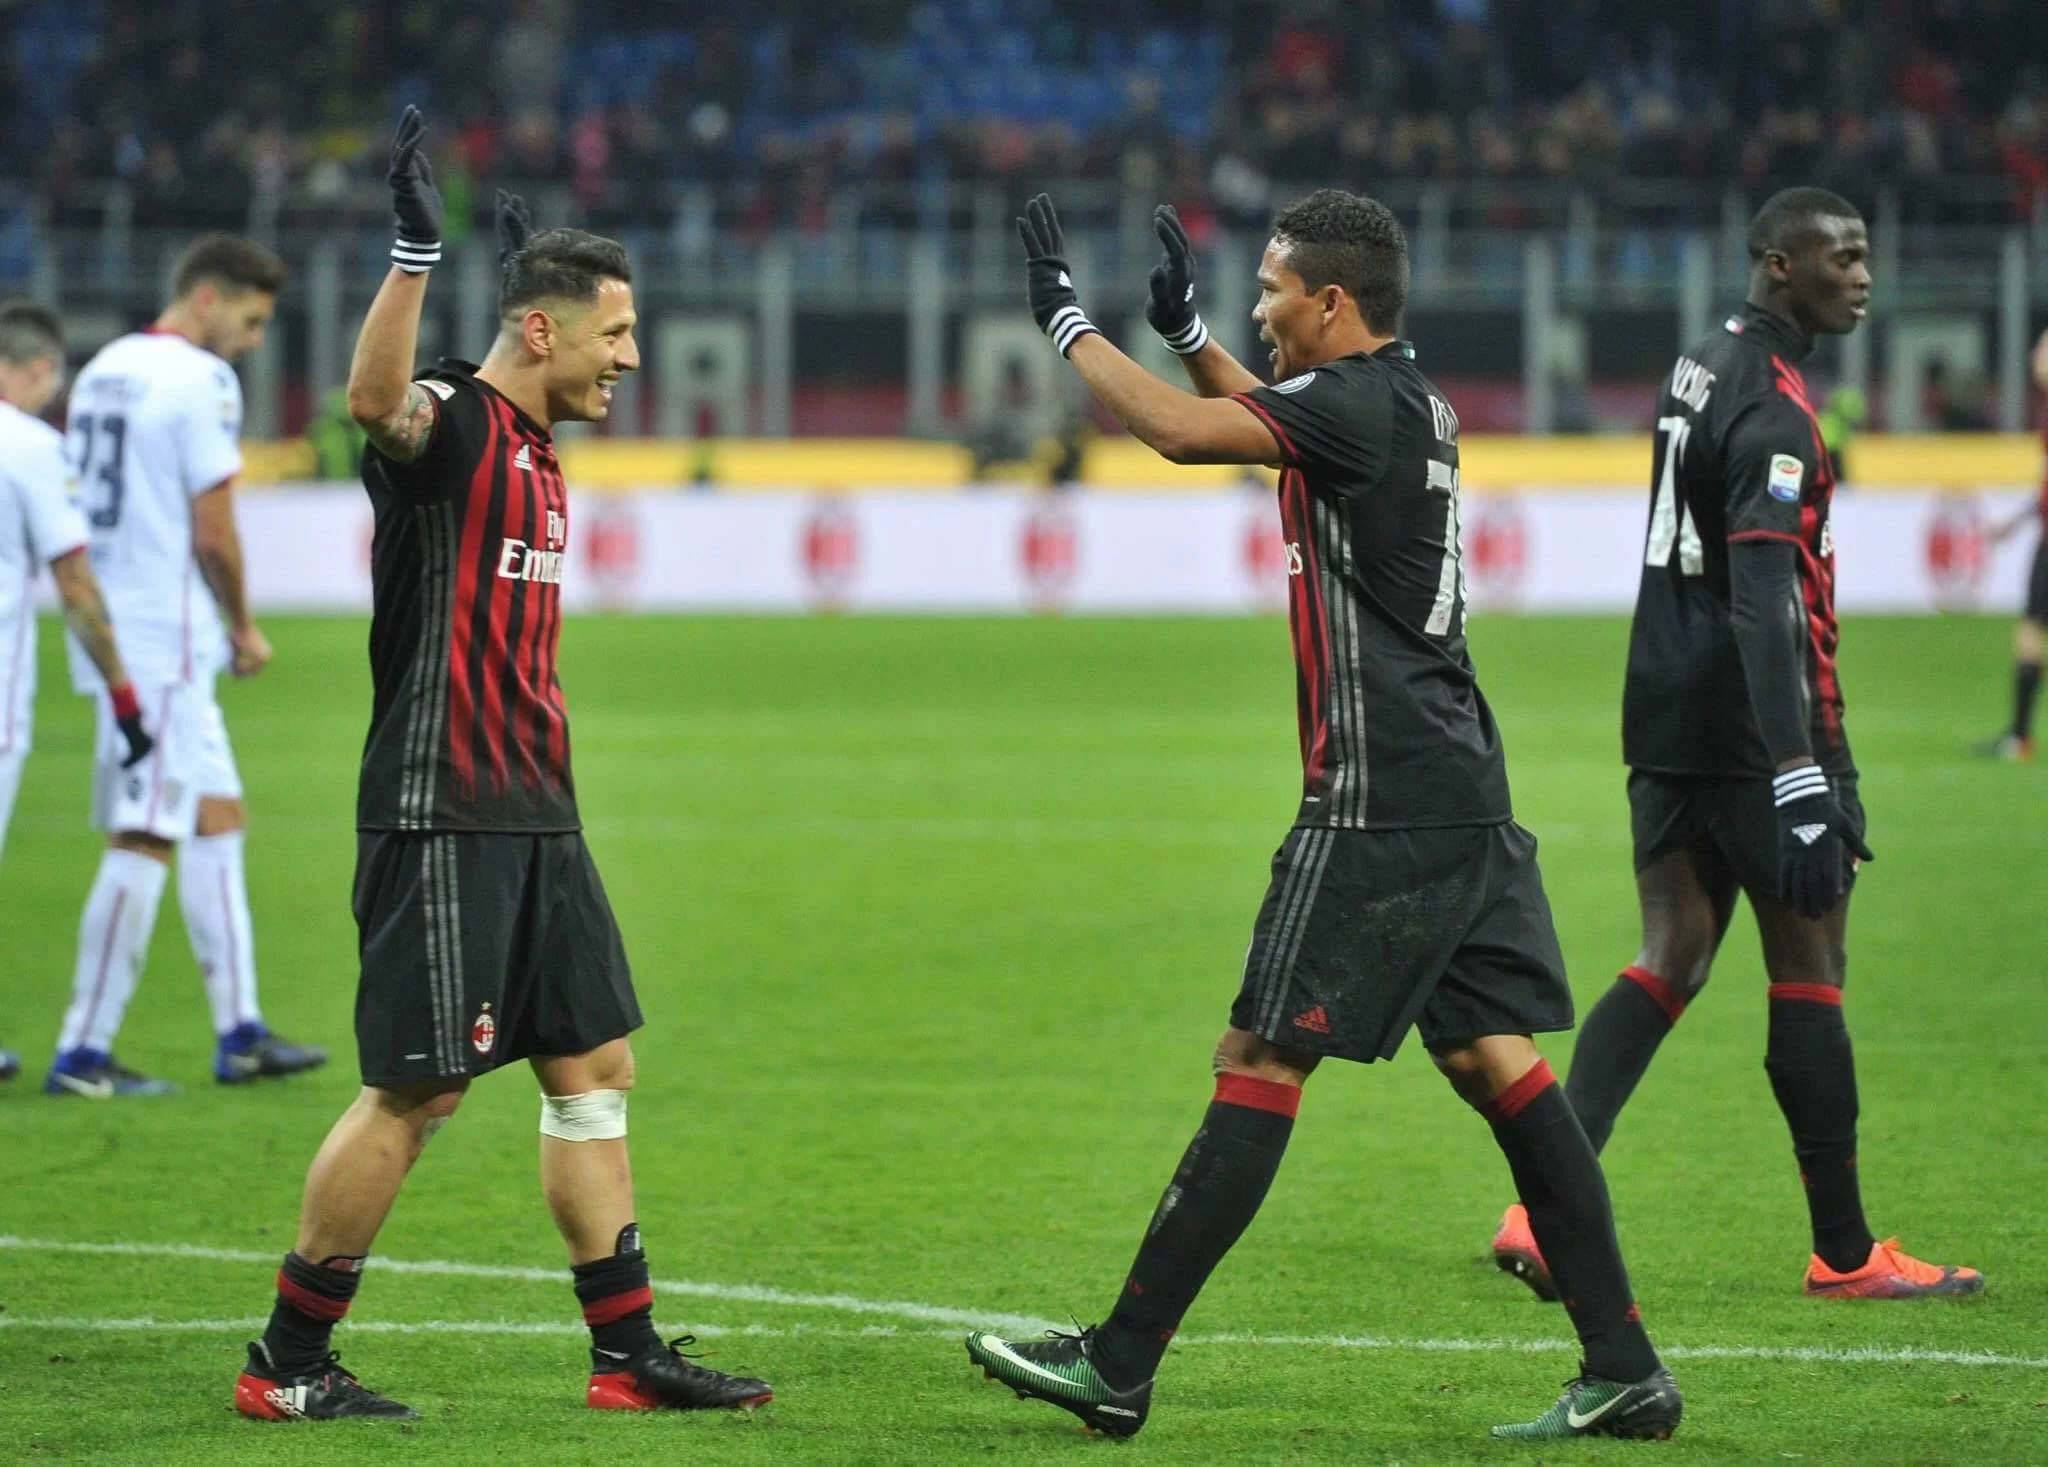 È cambiata la mentalità: il Milan segna, quasi sempre vince e non prende gol